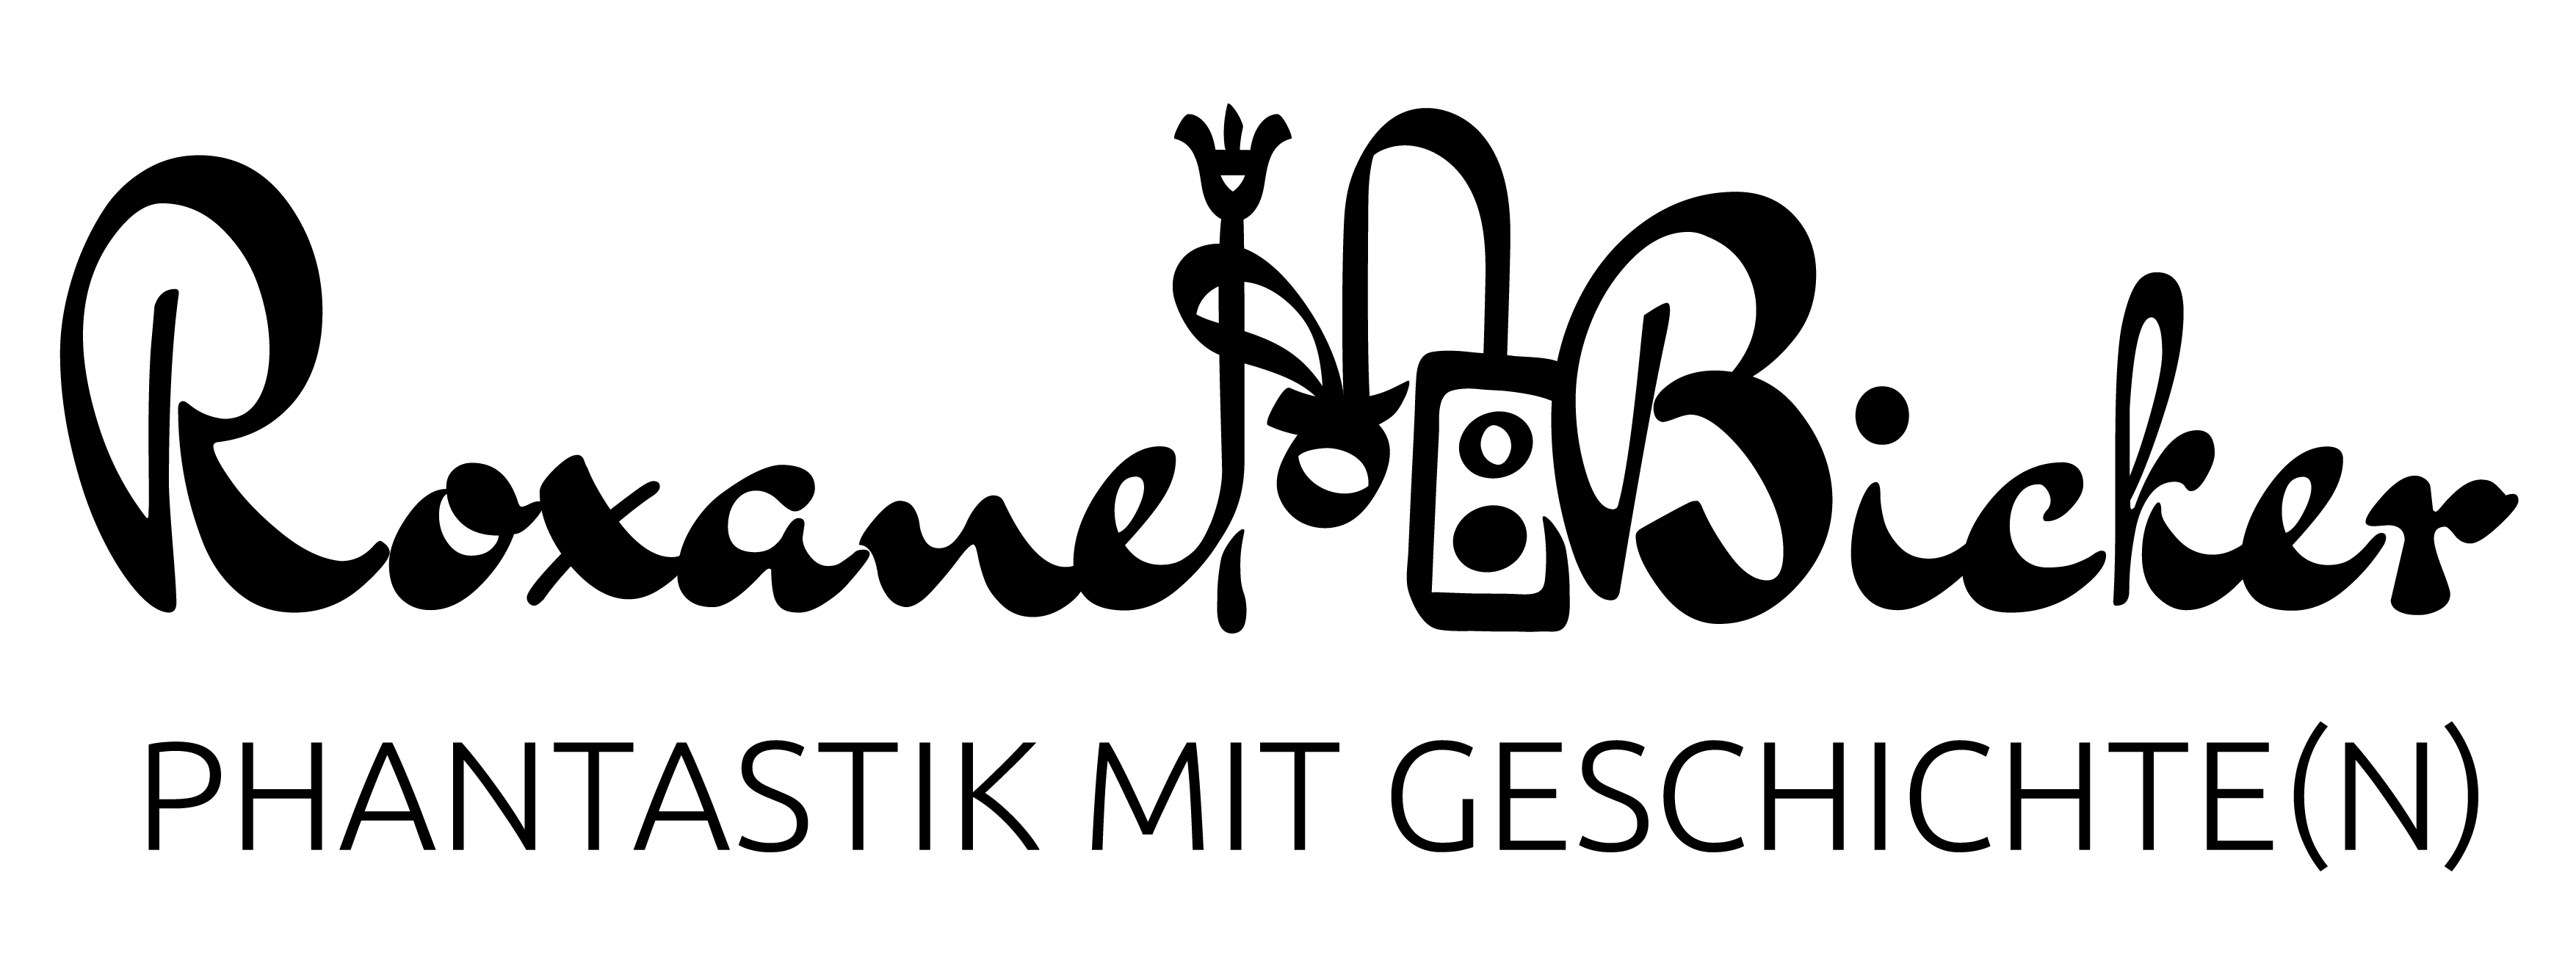 Logo von Roxane: In geschwungener Schrift steht oben Roxane Bicker, zwischen Vor- und Nachname eine stilisierte Hieroglyphe einer Schreibpalette. Darunter in klaren Großbuchstaben: Phantastik mit Geschichte(n)